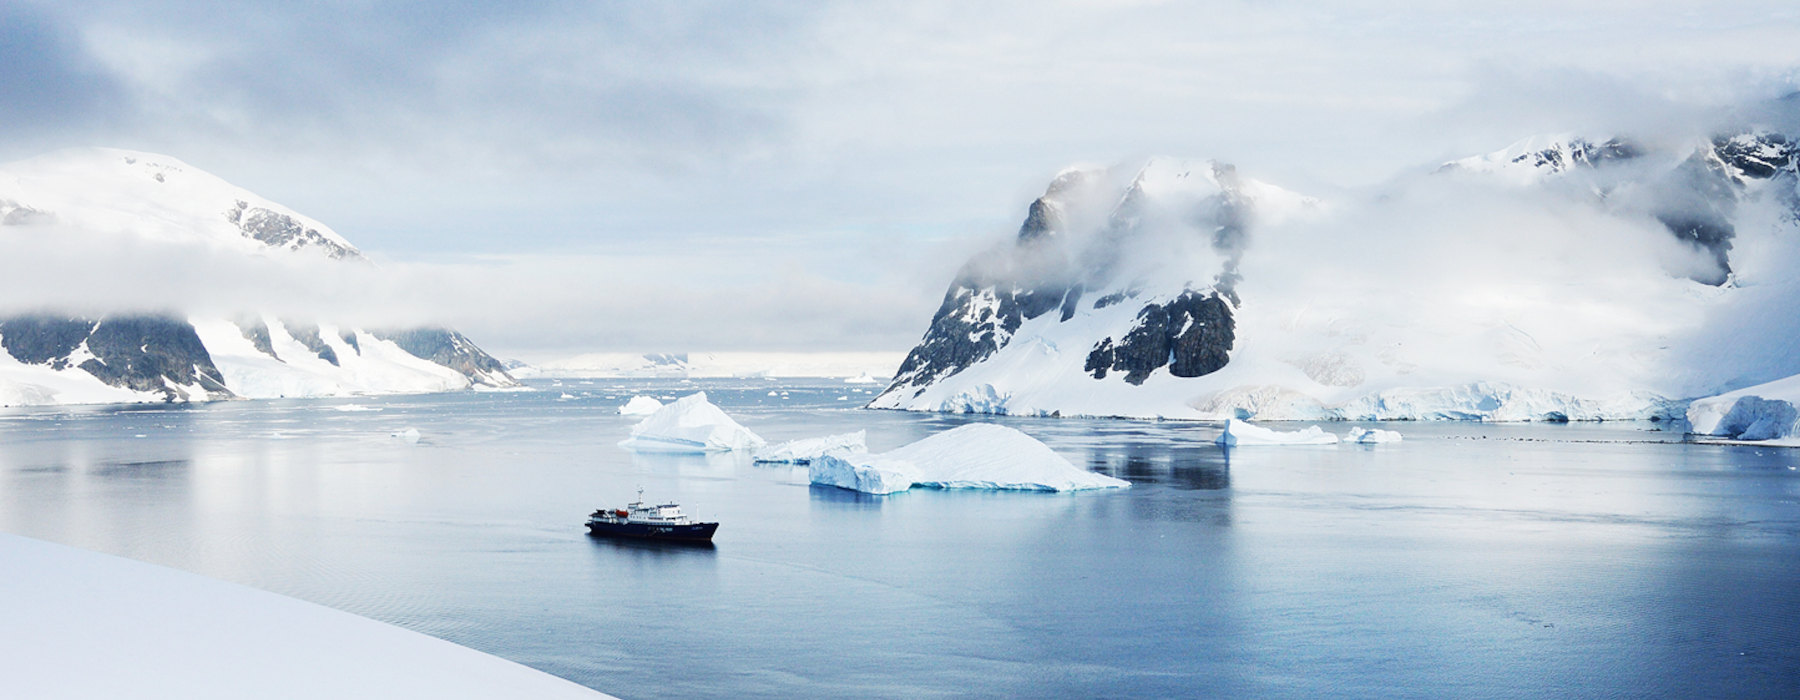 All our Antarctica<br class="hidden-md hidden-lg" /> Travel Bucket List